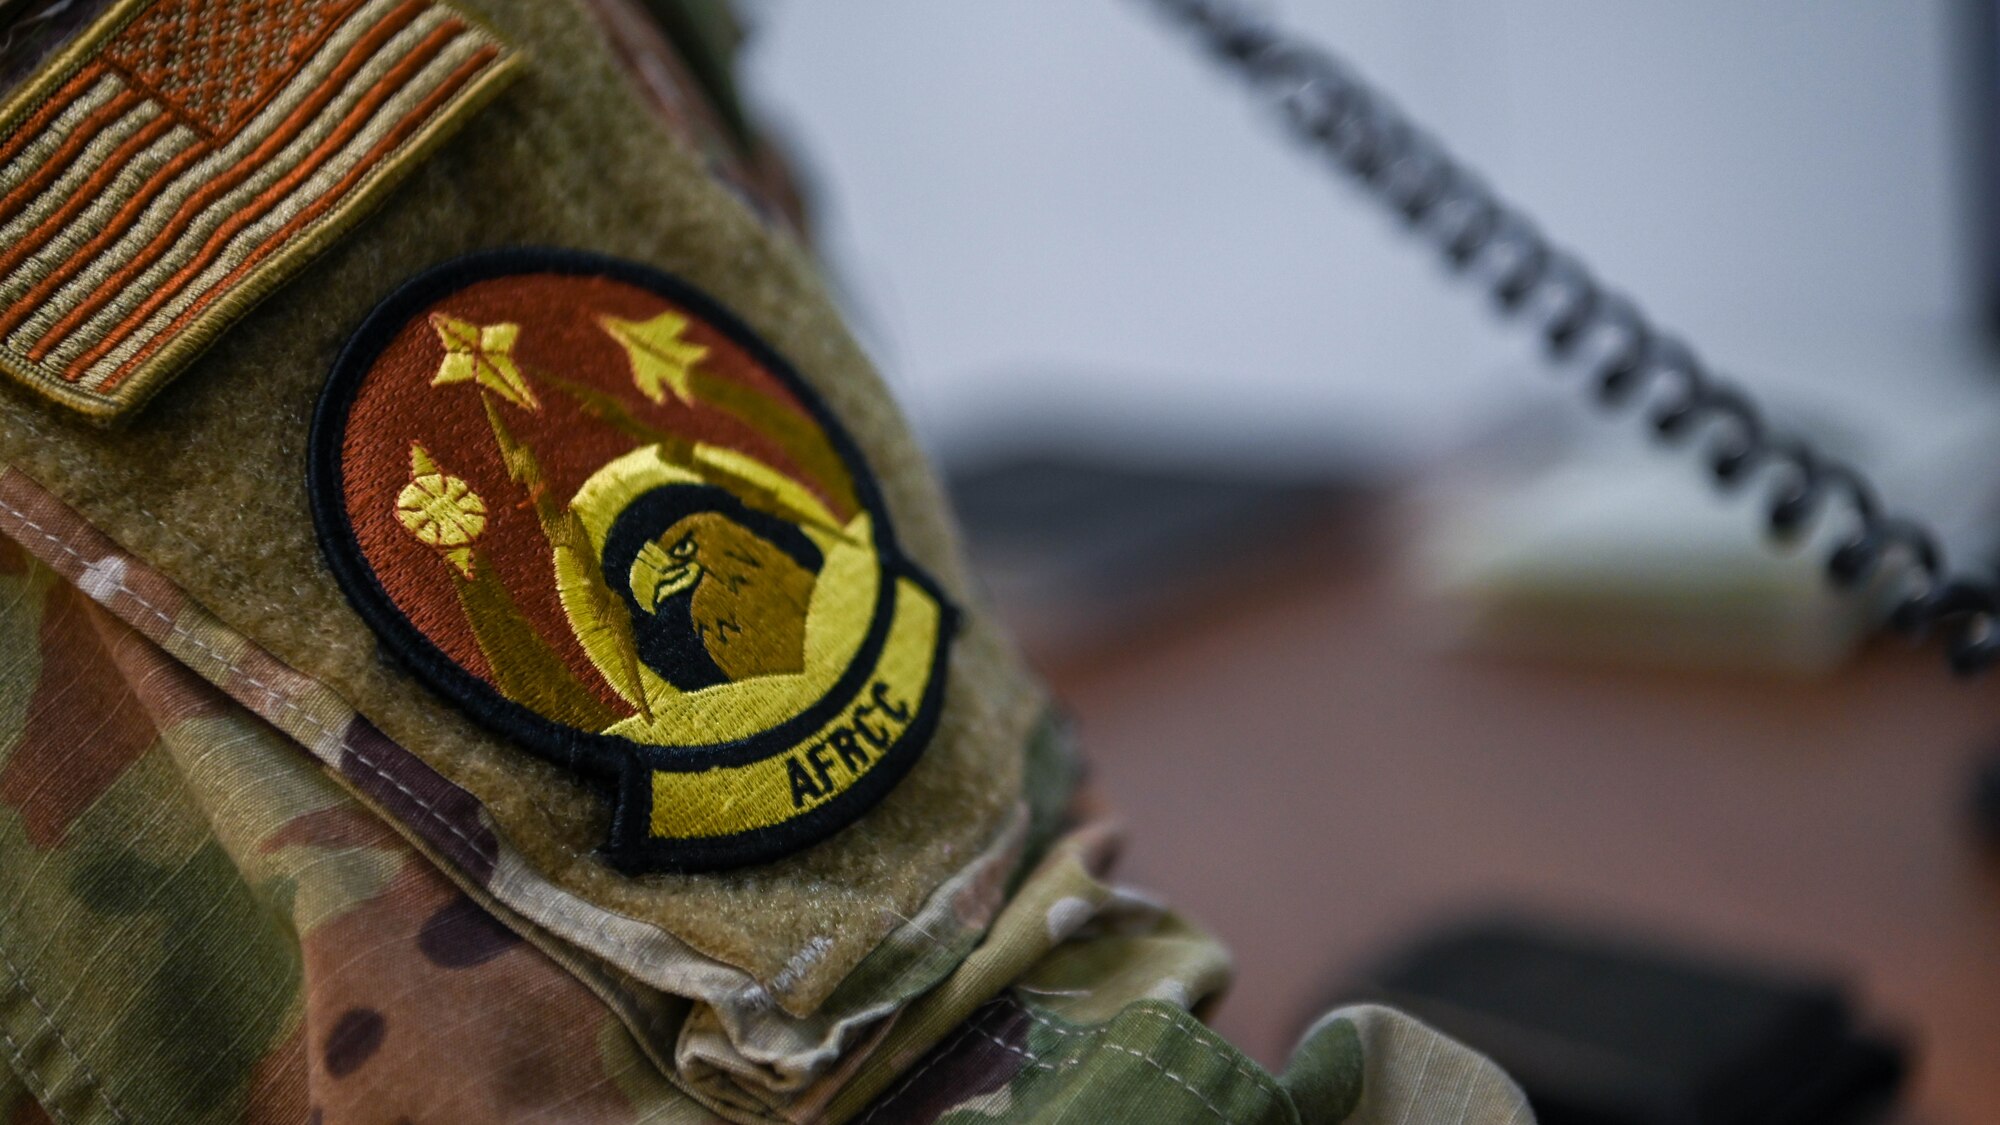 Military unit patch sits on uniform